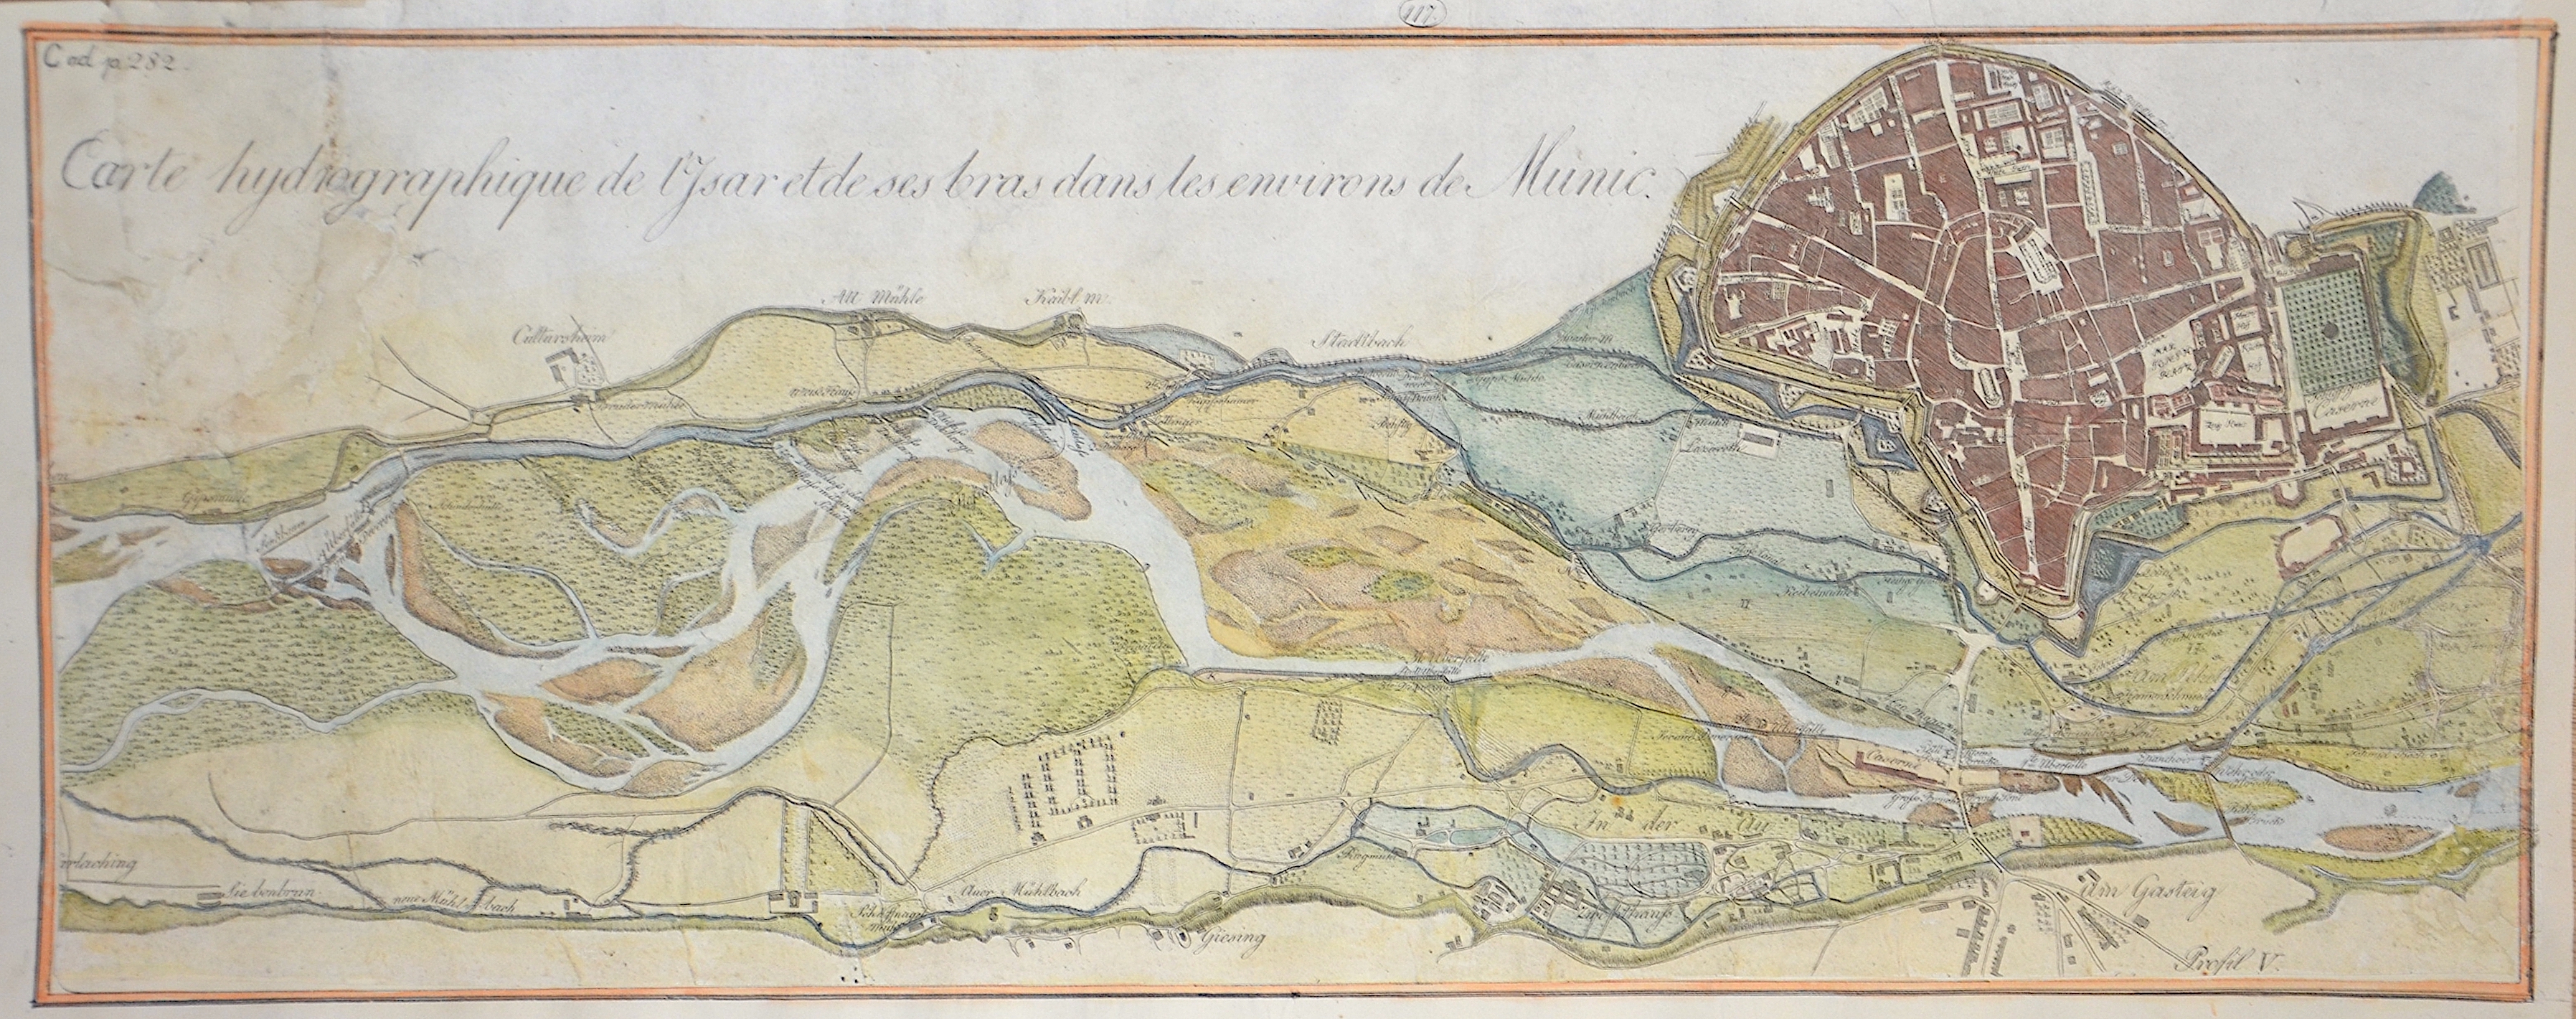 Riedl  Carte hydrographique de l’Isar et de ses bras dans les environs de Munic.